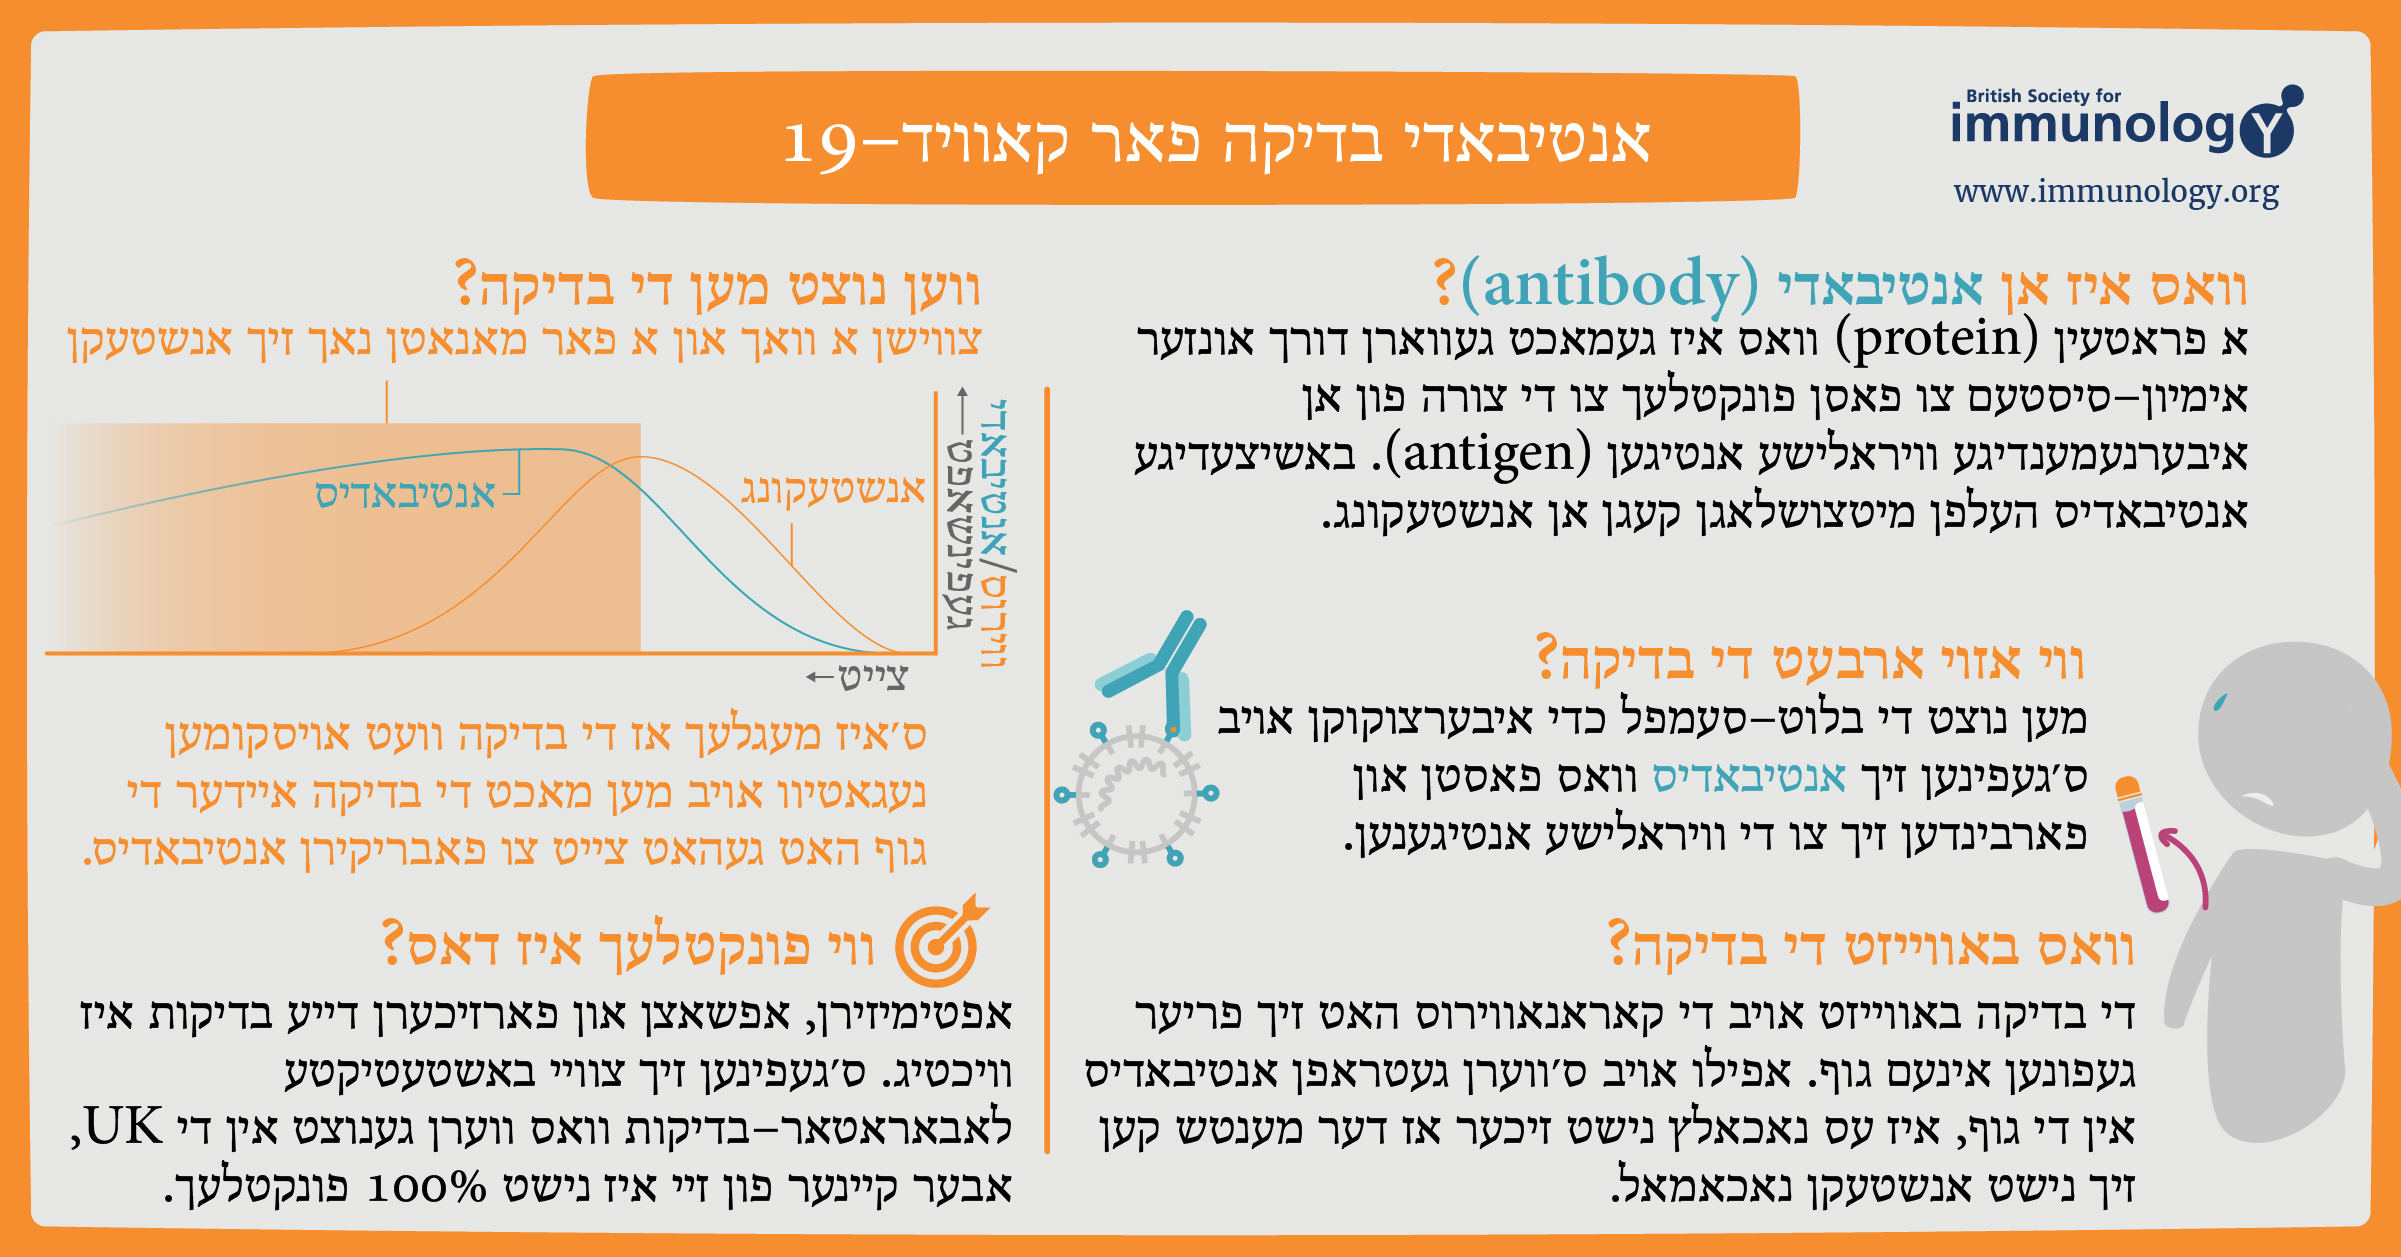 BSI Antibody Testing Yiddish 